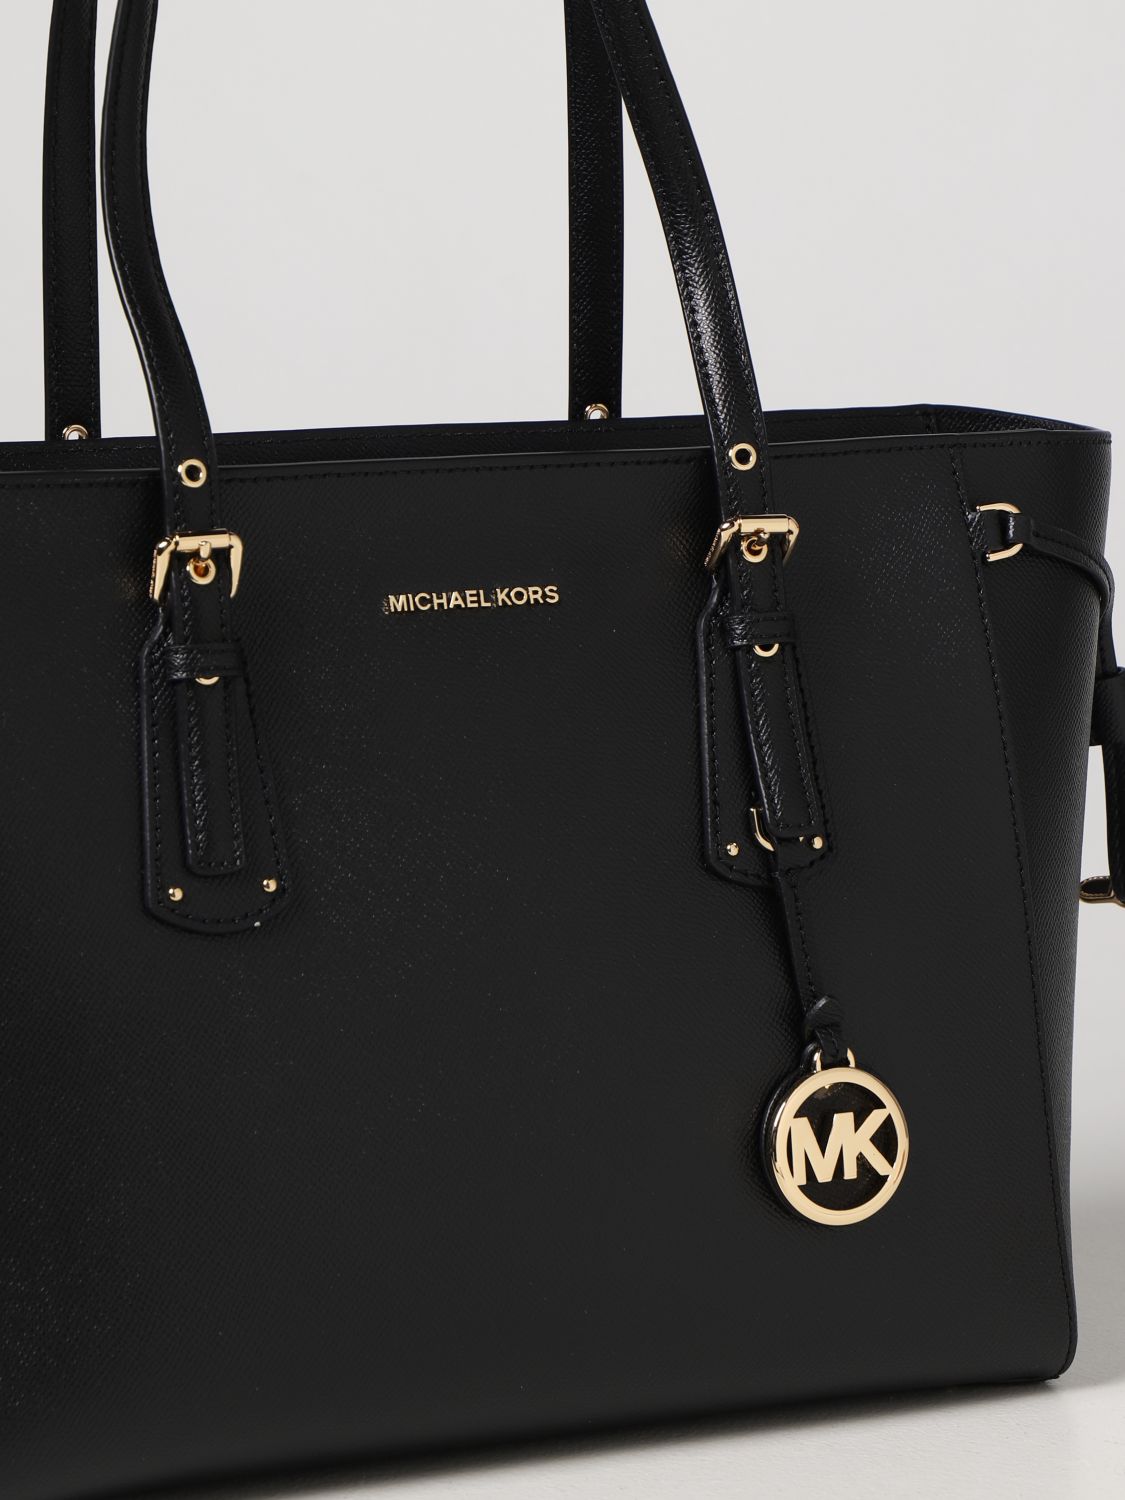 MICHAEL KORS: Michael bag in micro grain leather - Black